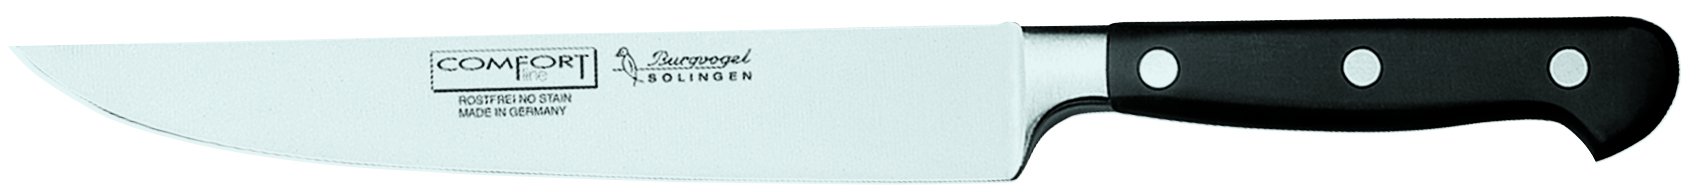 Burgvogel Solingen Comfort Line scharfes Fleischmesser geschmiedet 18 cm, rostfrei, spülmaschinenfest, Schinkenmesser hochwertig, genietet, schwarz, 7" = 18 cm, 6830.911.18.0